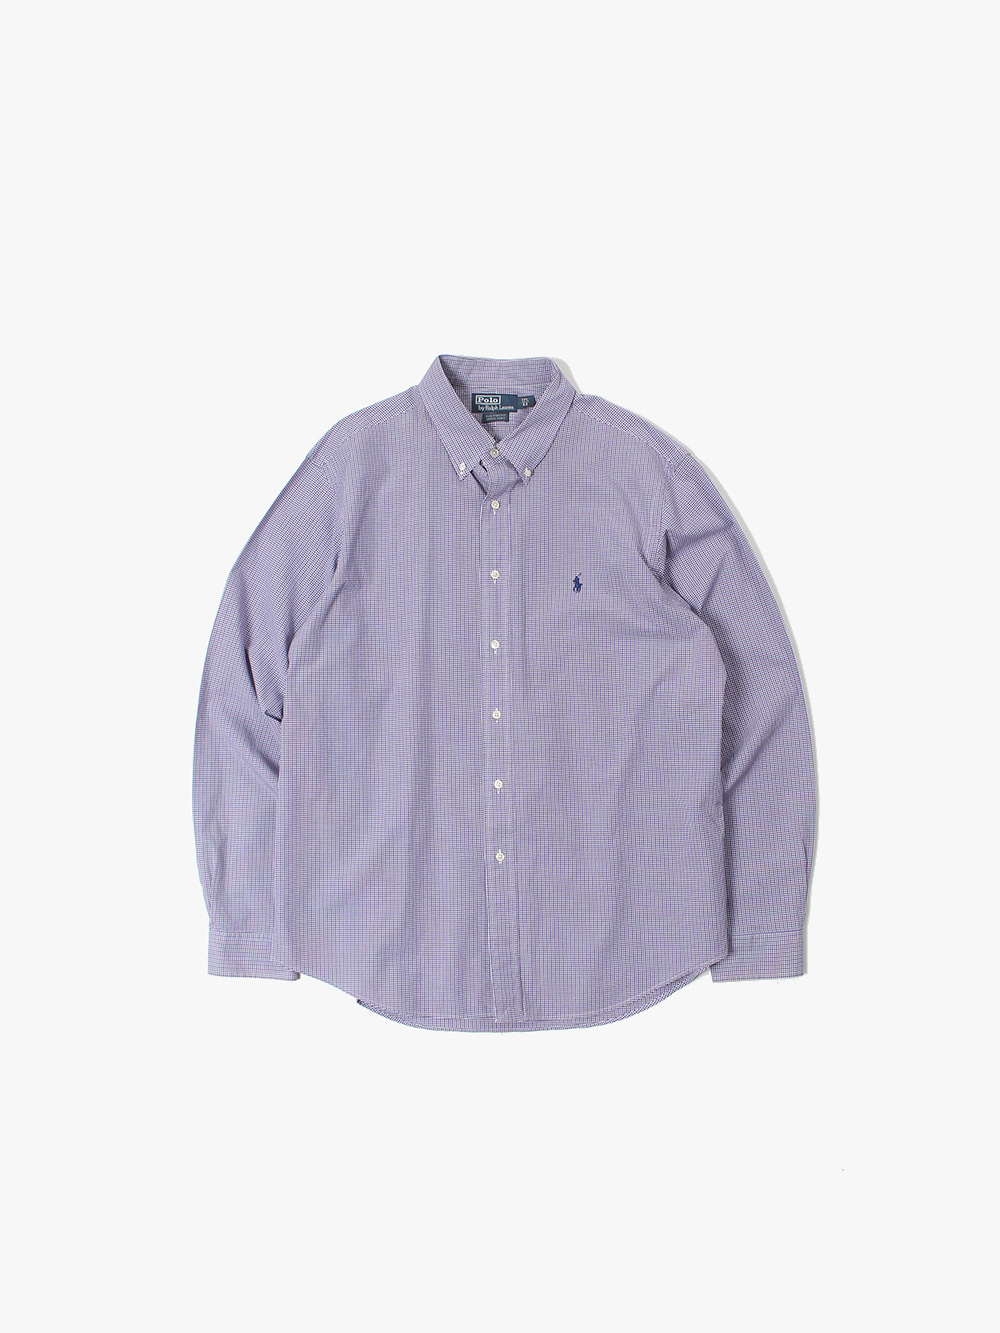 [ 105-110 ] Polo Ralph Lauren Shirt (6147)